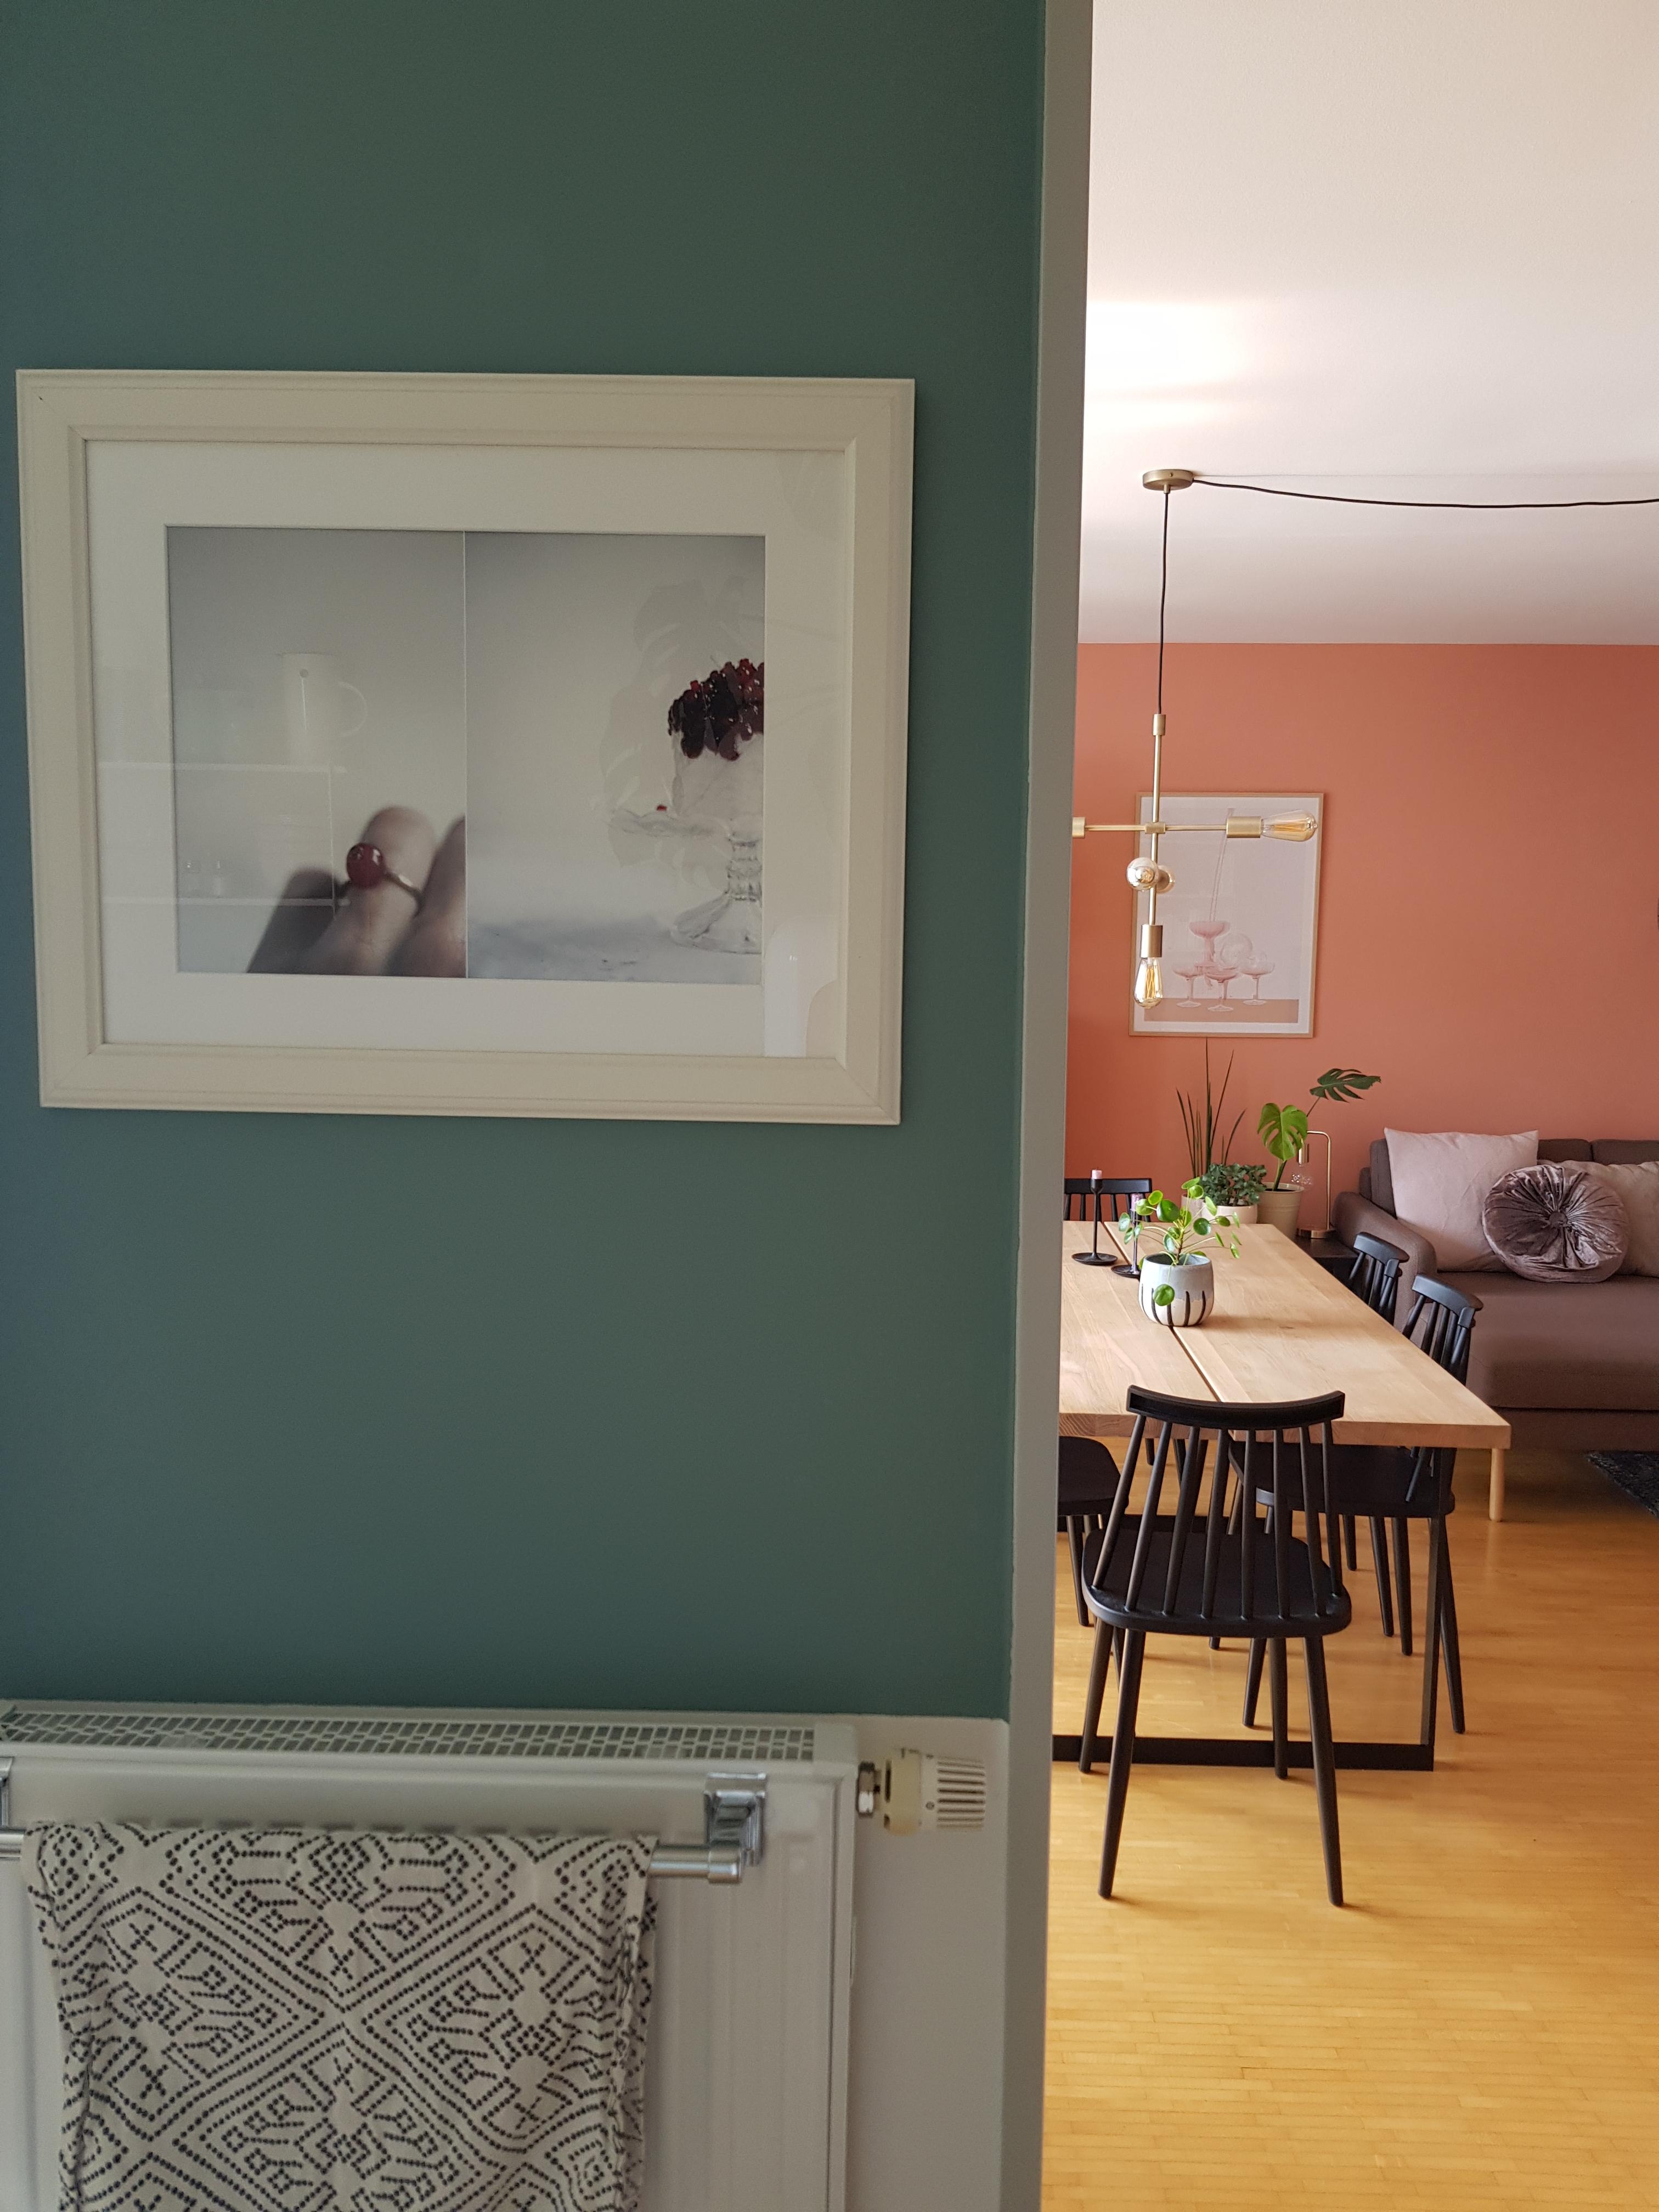 Das letzte Stück weiße Wand in der Küche ist jetzt #agavengrün wie der Flur-ich mag den neuen Durchblick ins #wohnzimmer